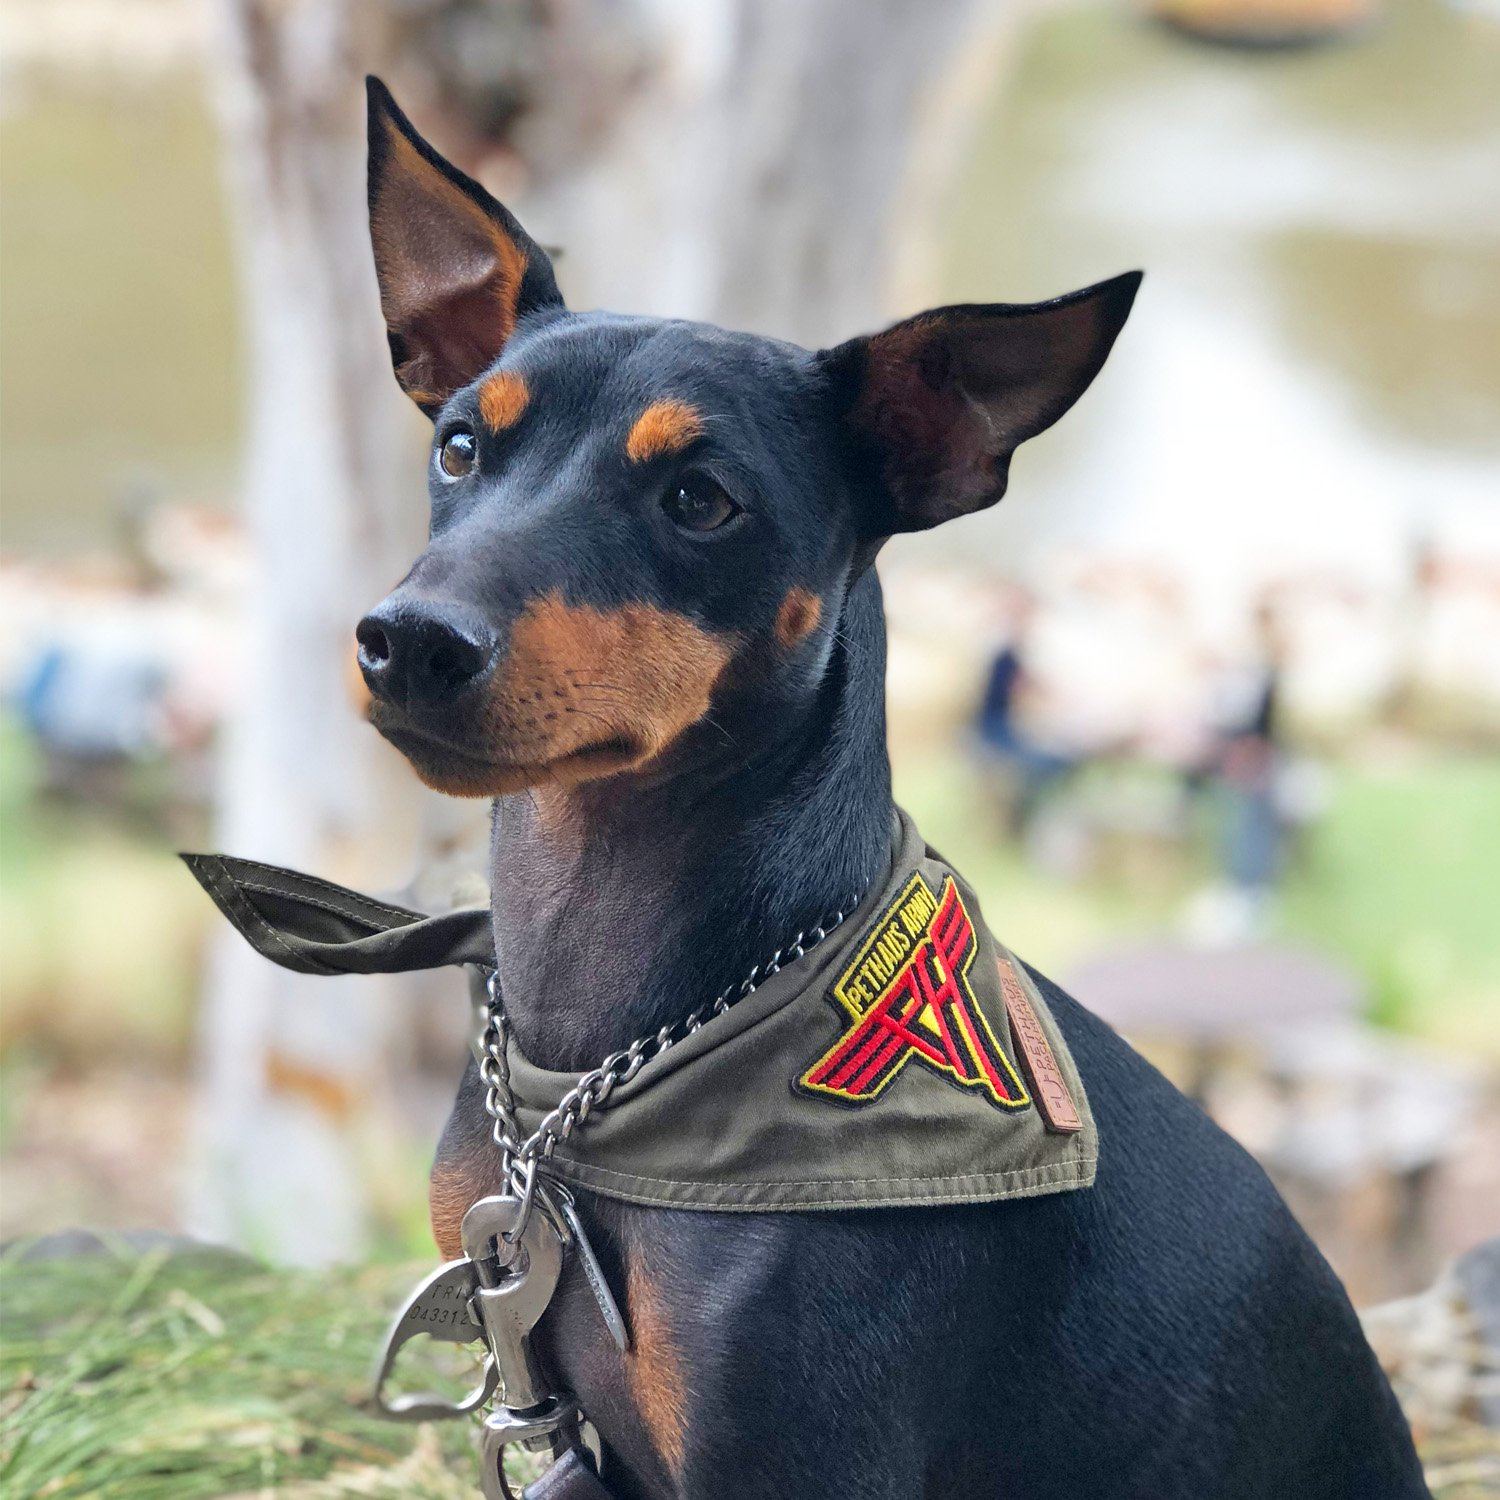 Army green dog bandana, khaki dog bandana, dog bandana with patches, dog patches, service dog